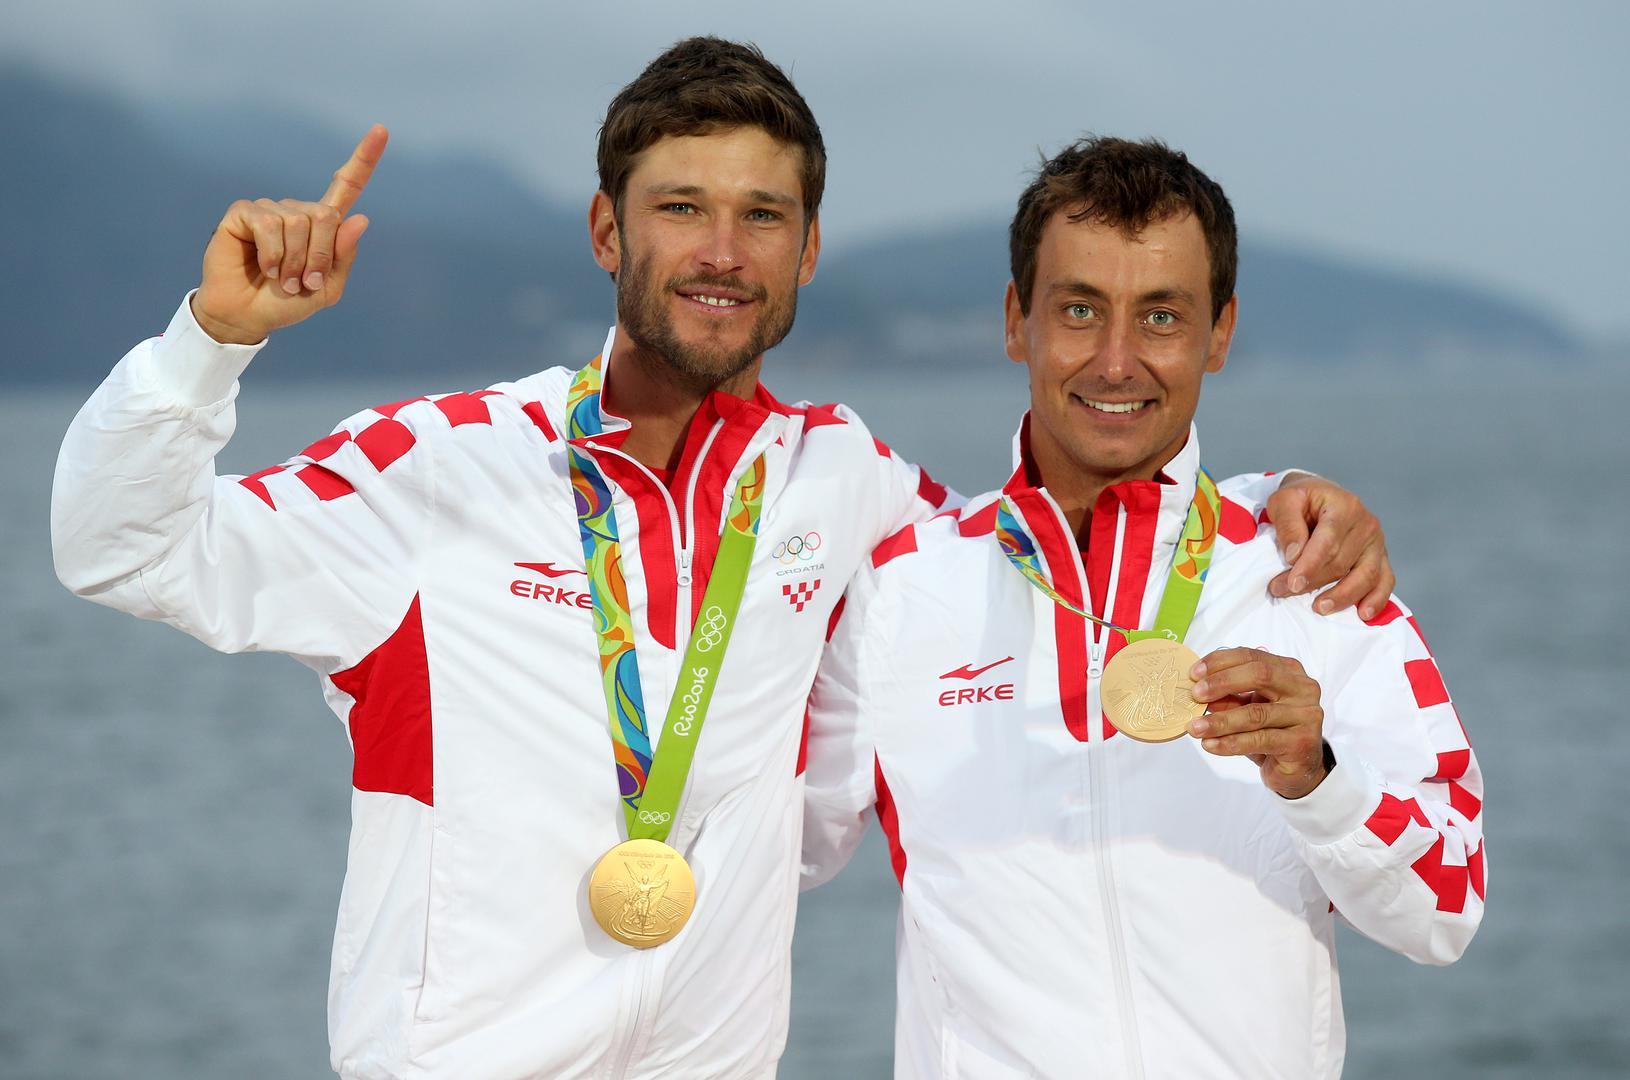 3. Igor Marenić i Šime Fantela su na Olimpijskim igrama u Rio de Janeiru  u jakoj konkurenciji i teškim uvjetima u klasi 470 osvojili zlatnu medalju.